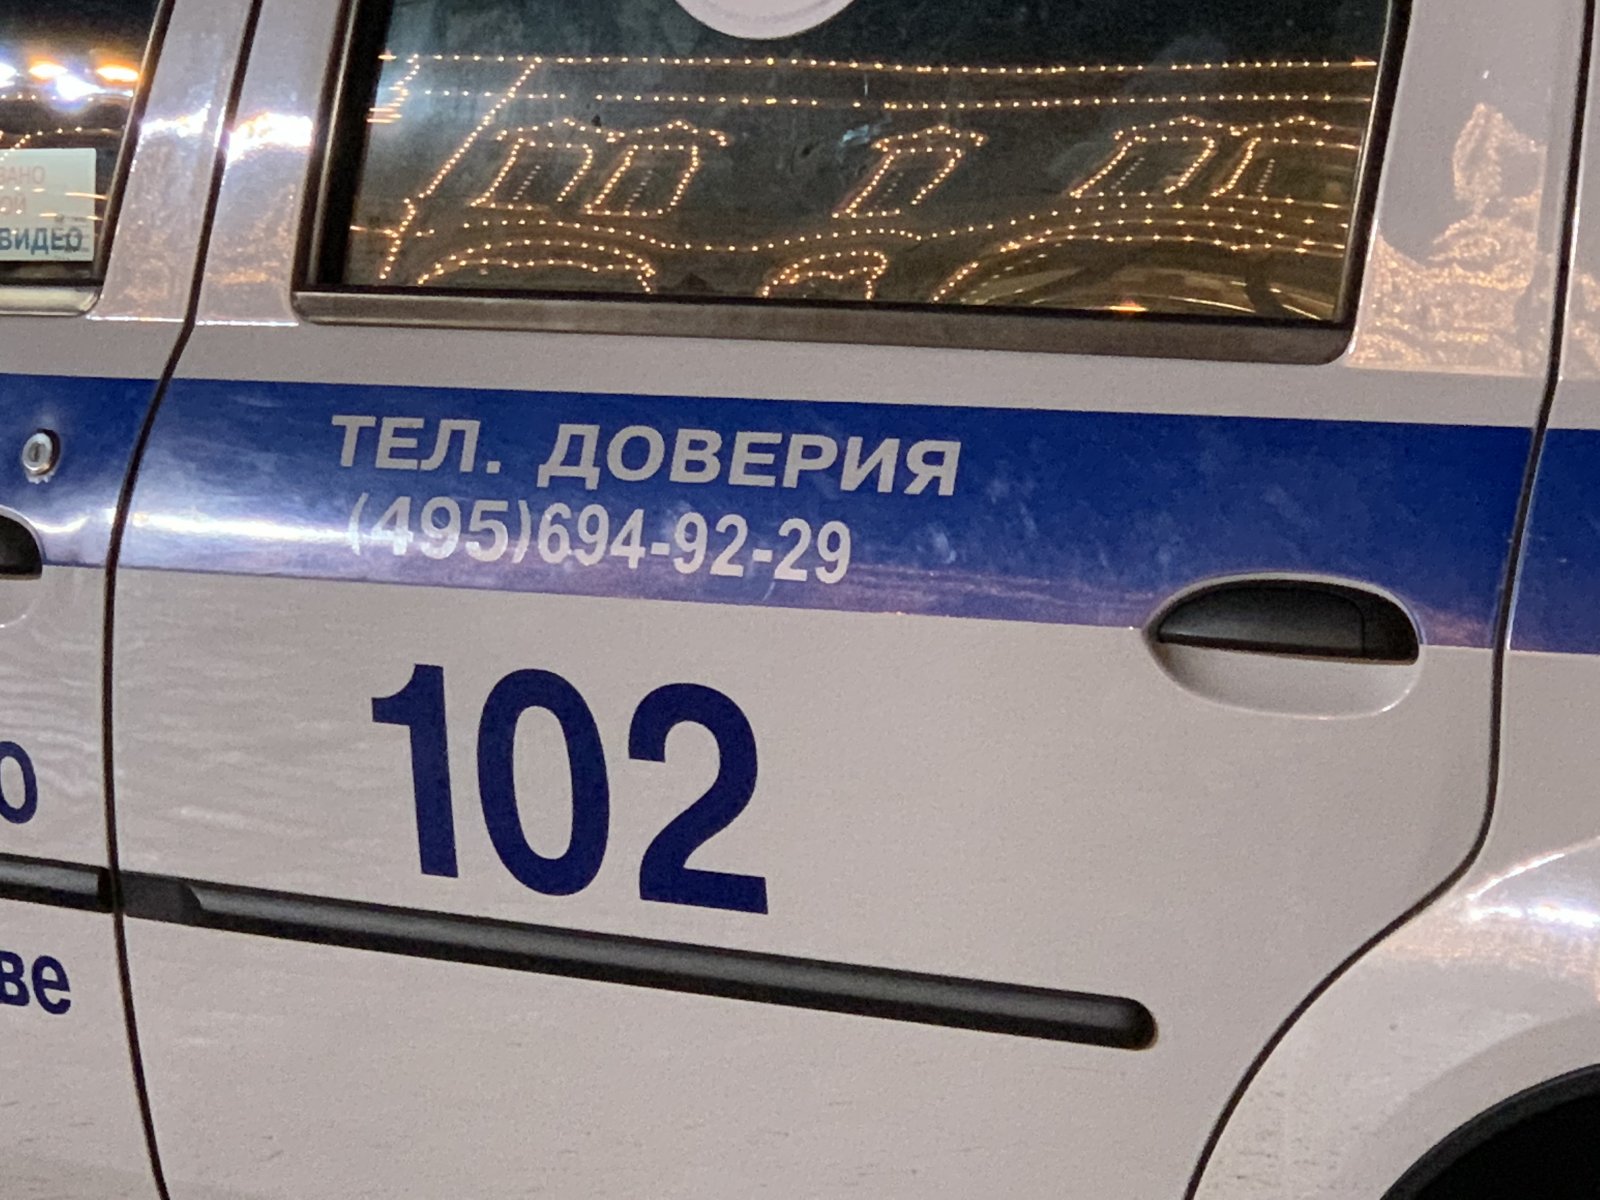 Два человека погибли в аварии с автобусом в Москве 